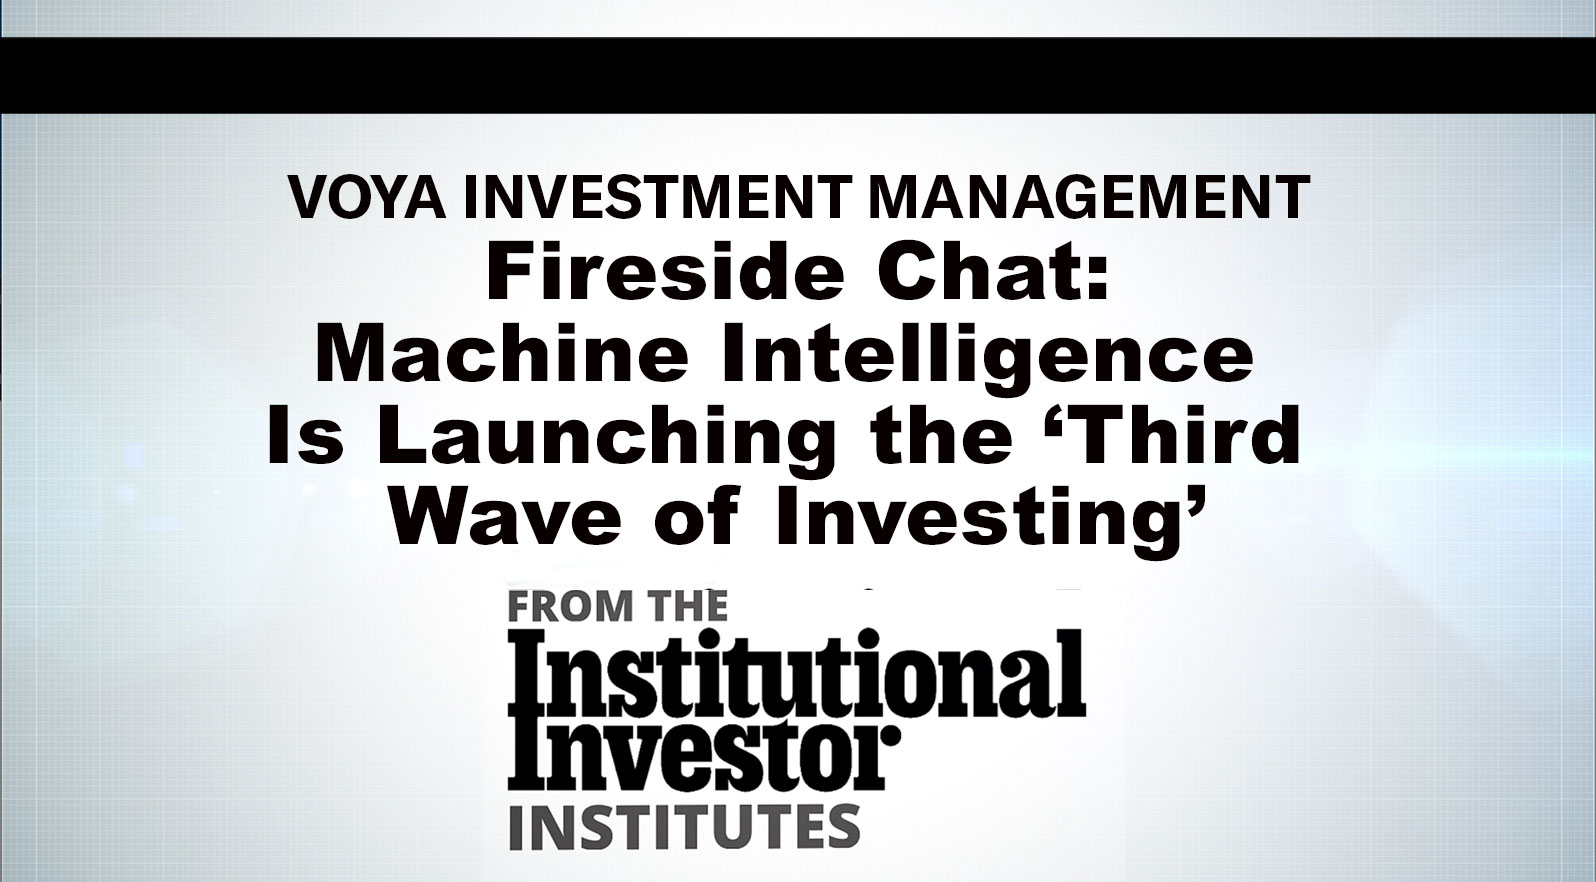 与Voya的炉边聊天:机器智能正在掀起“第三波投资浪潮”